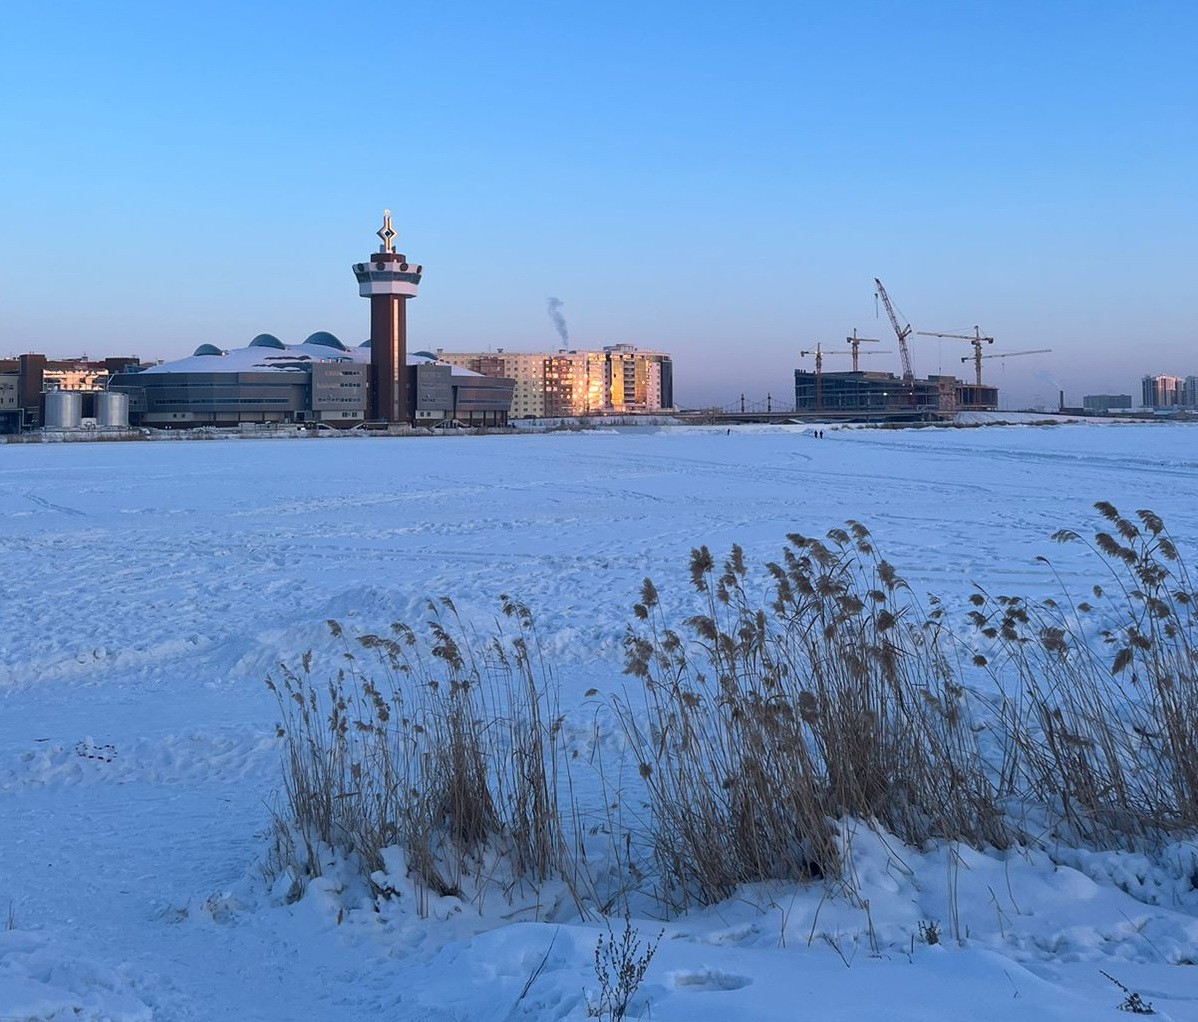 Прогноз погоды на 29 марта: В Якутске ветер северо-западный